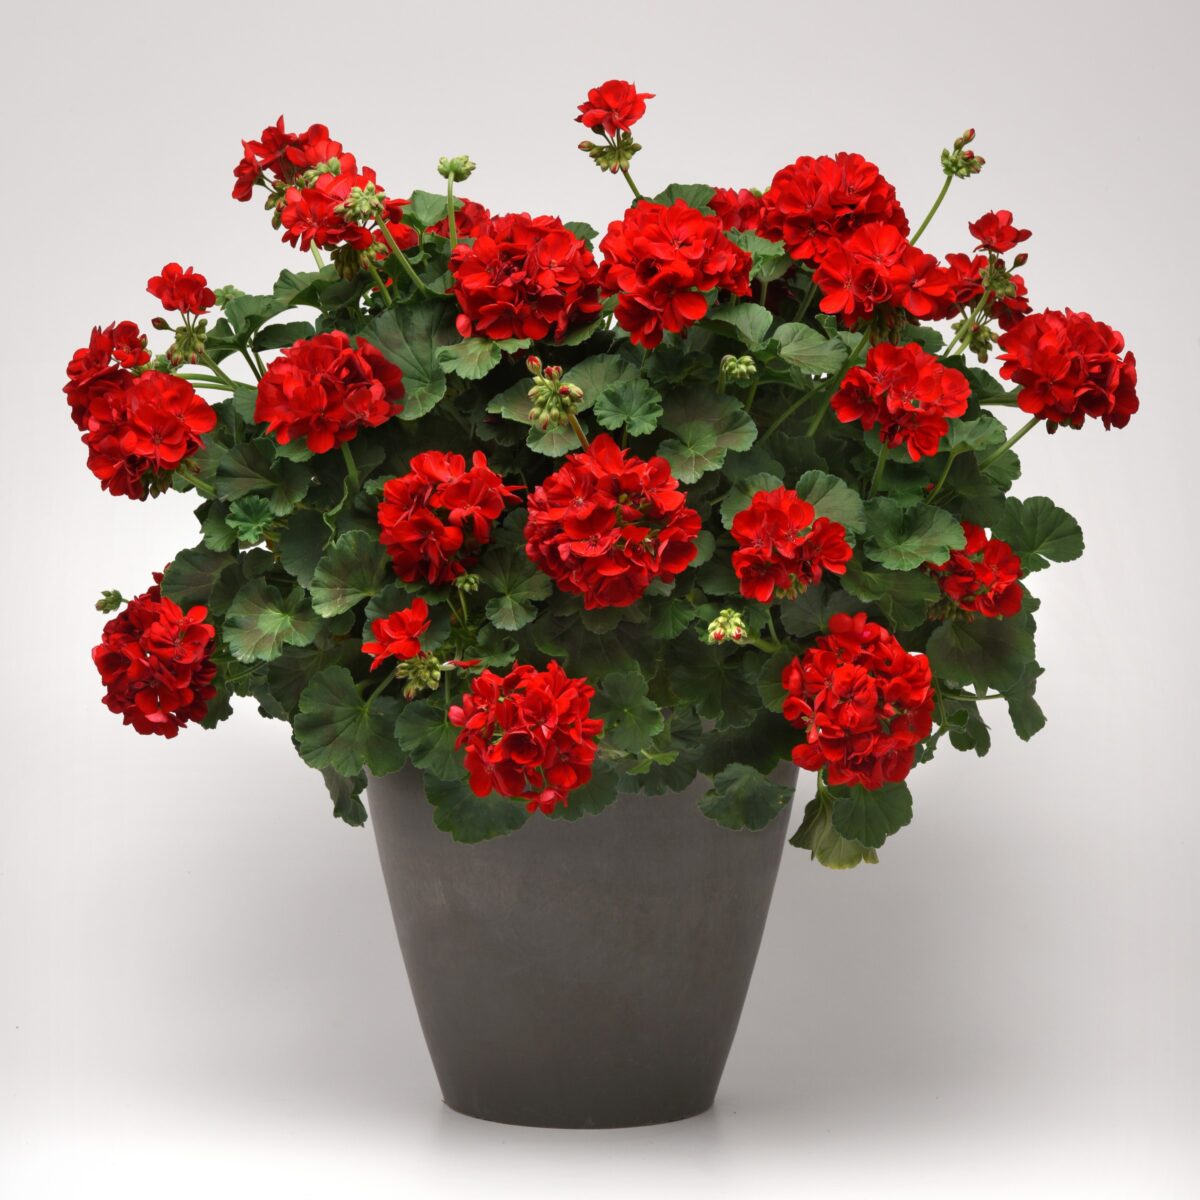 Elegant planting of the Fantasia Dark Red Geranium in a classic terracotta pot